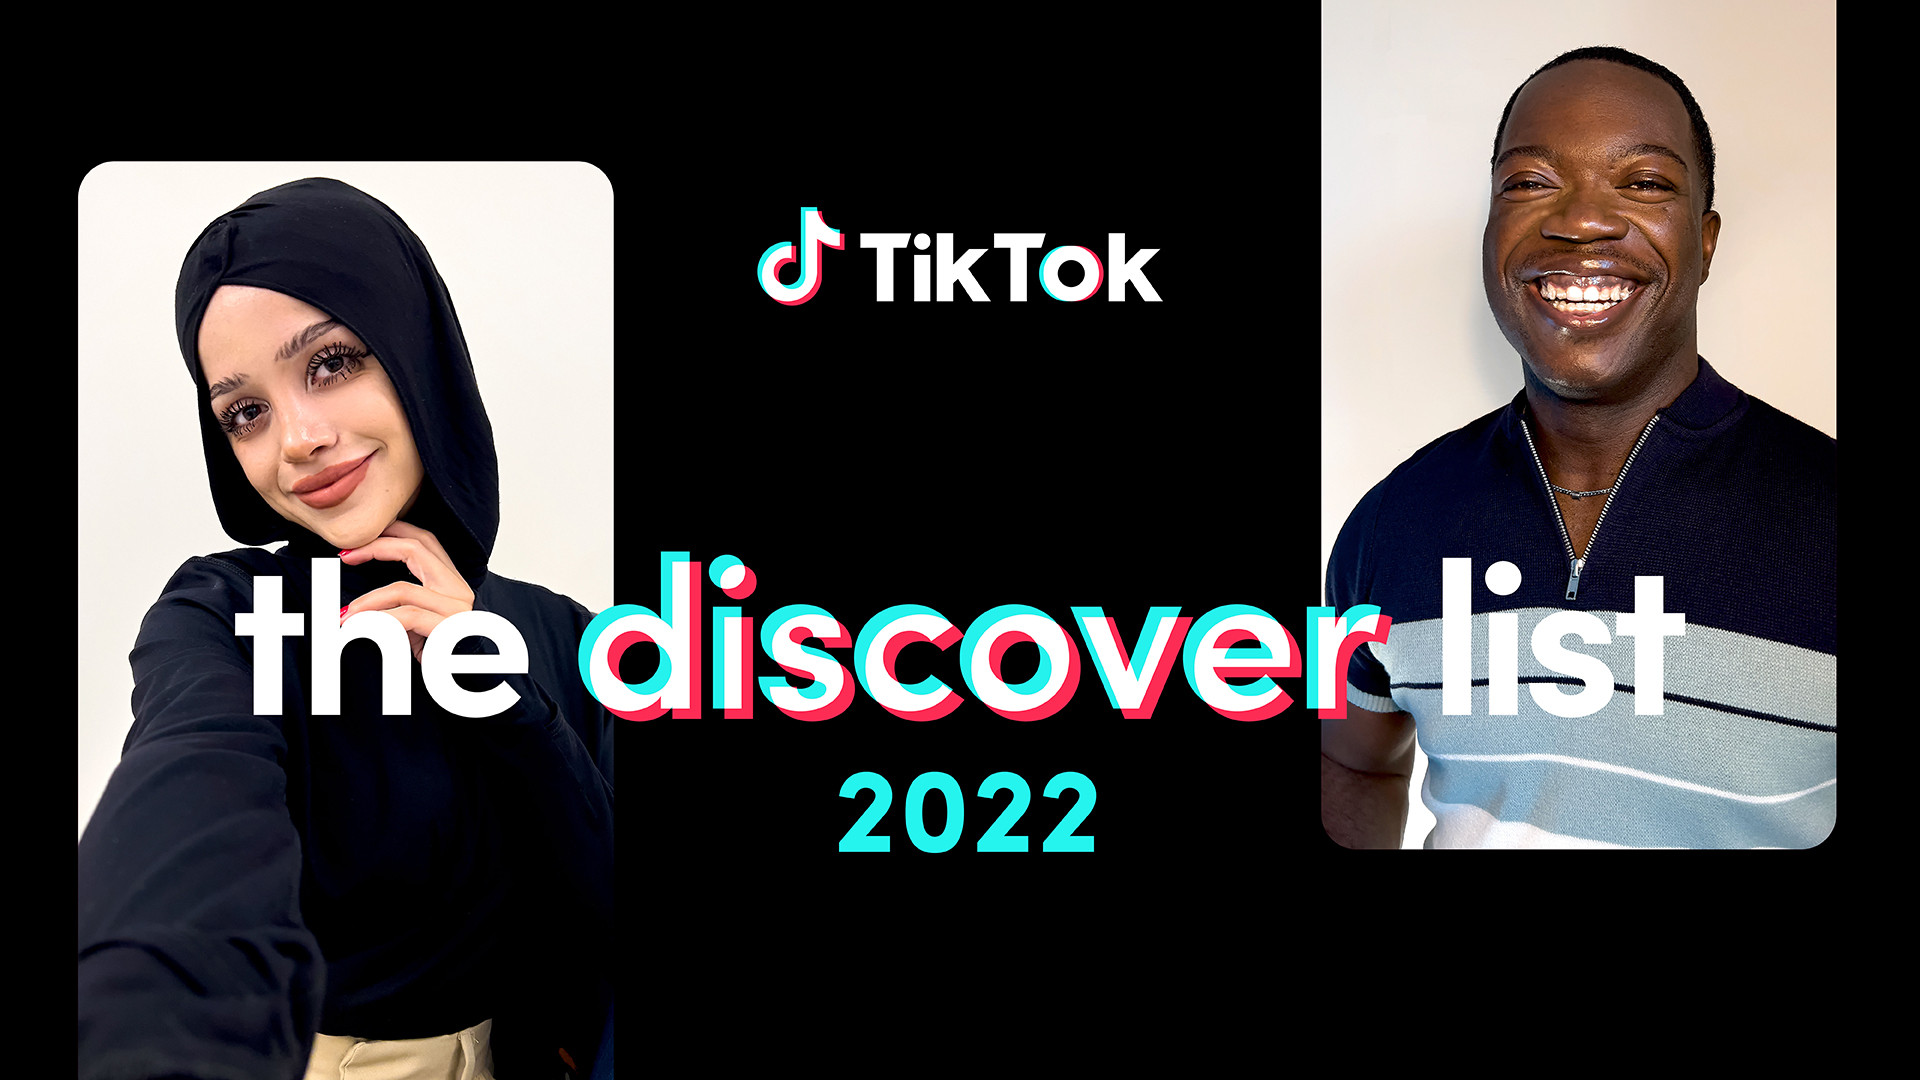 Kreatif Dan Menghibur, 3 Kreator Indonesia Masuk Daftar The Discover List 2022